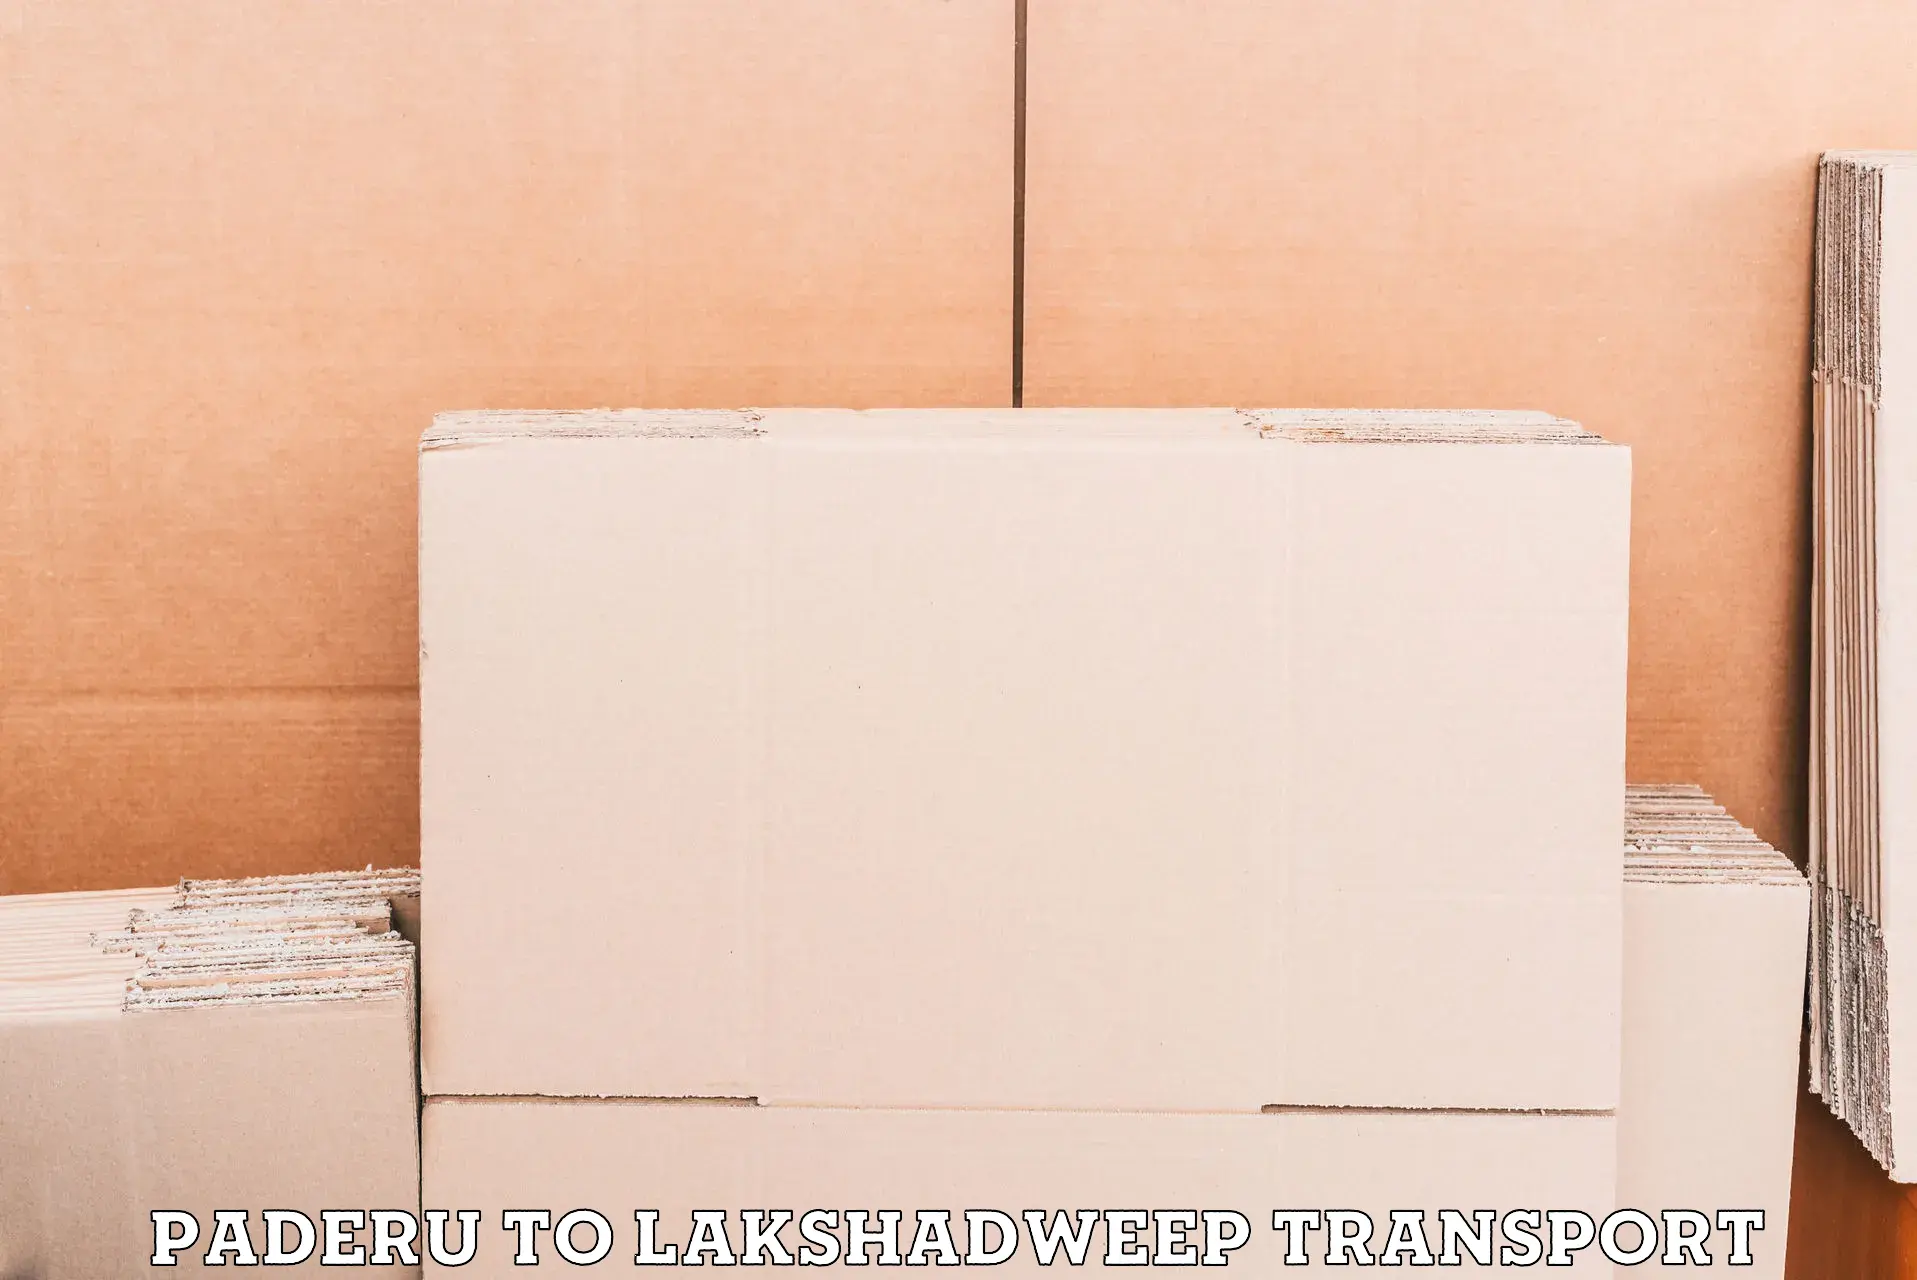 Furniture transport service Paderu to Lakshadweep